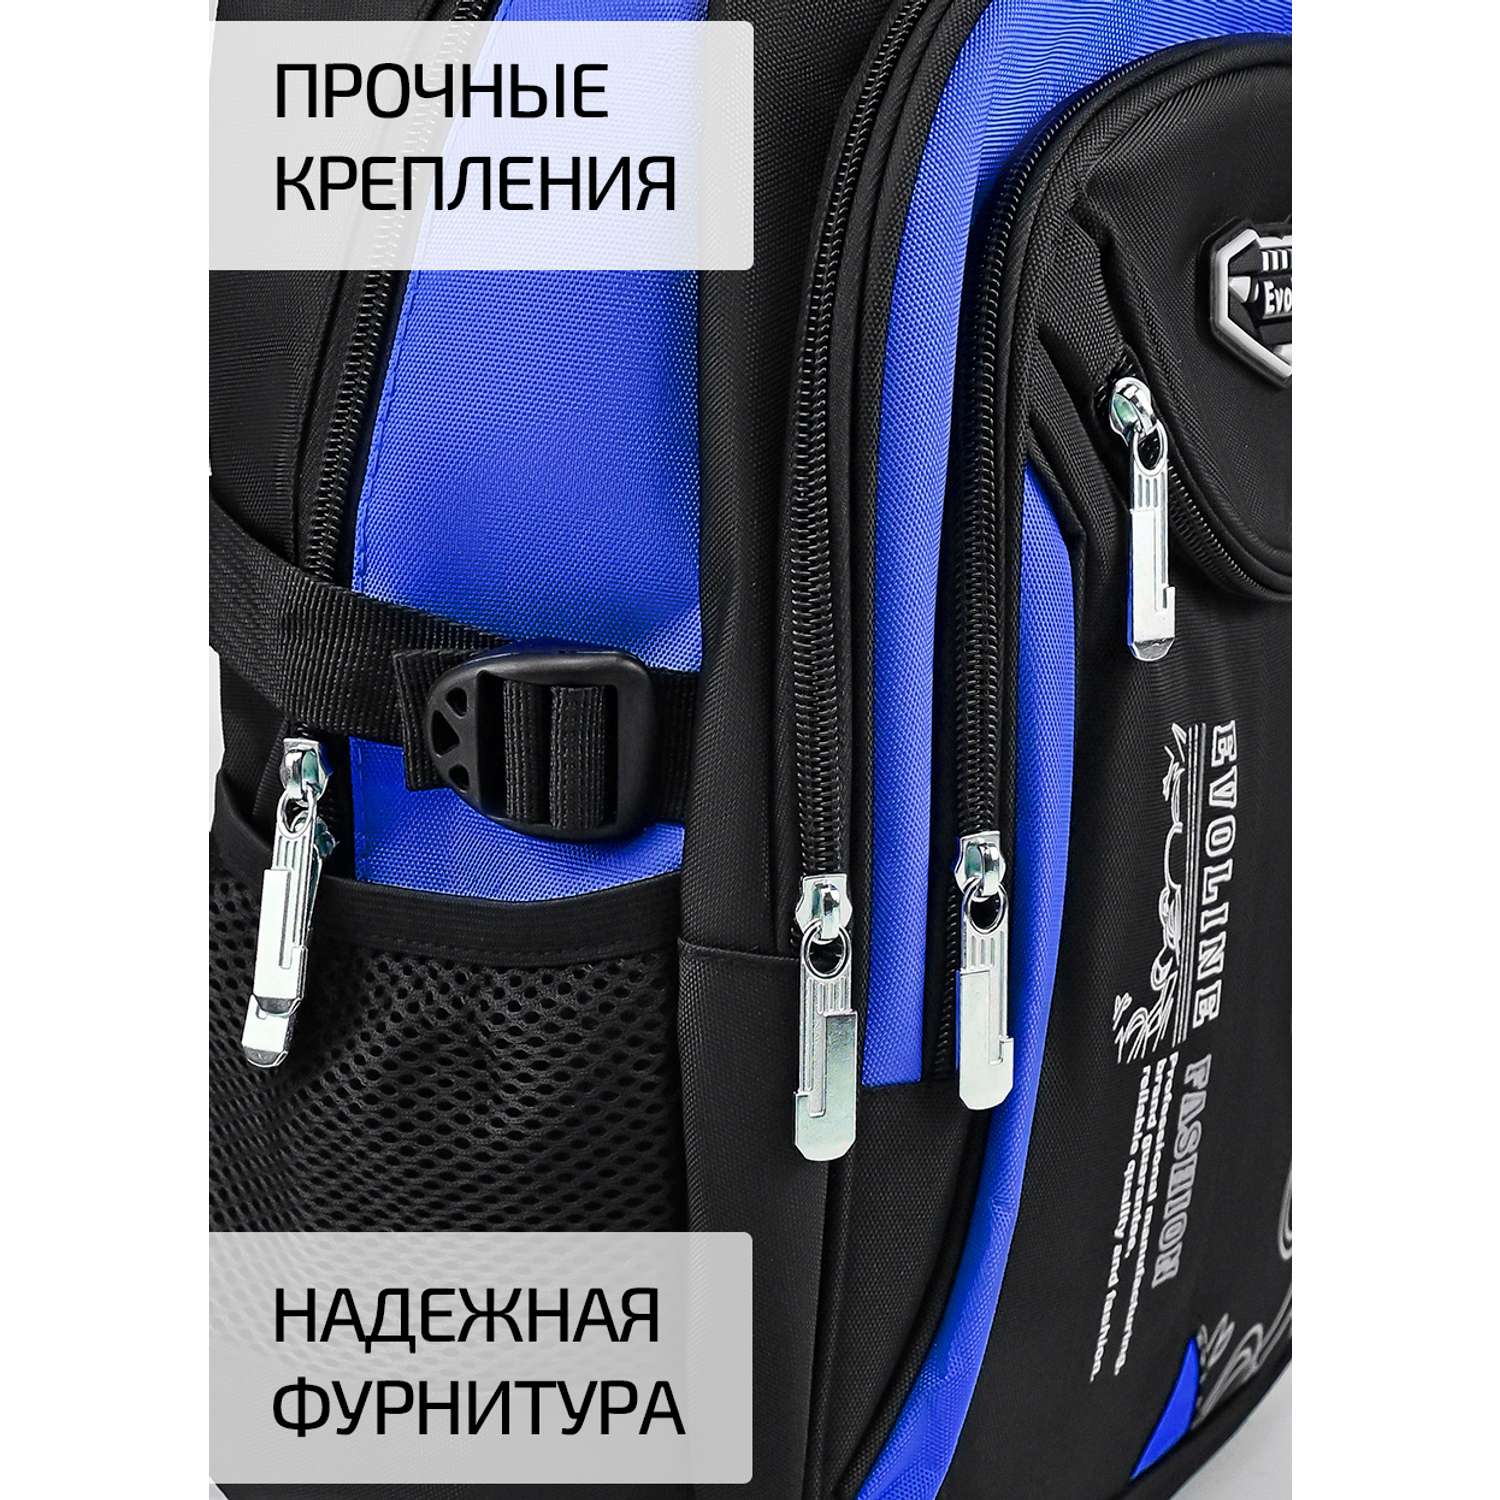 Рюкзак школьный Evoline средний черно-голубой EVO-158-1 - фото 7